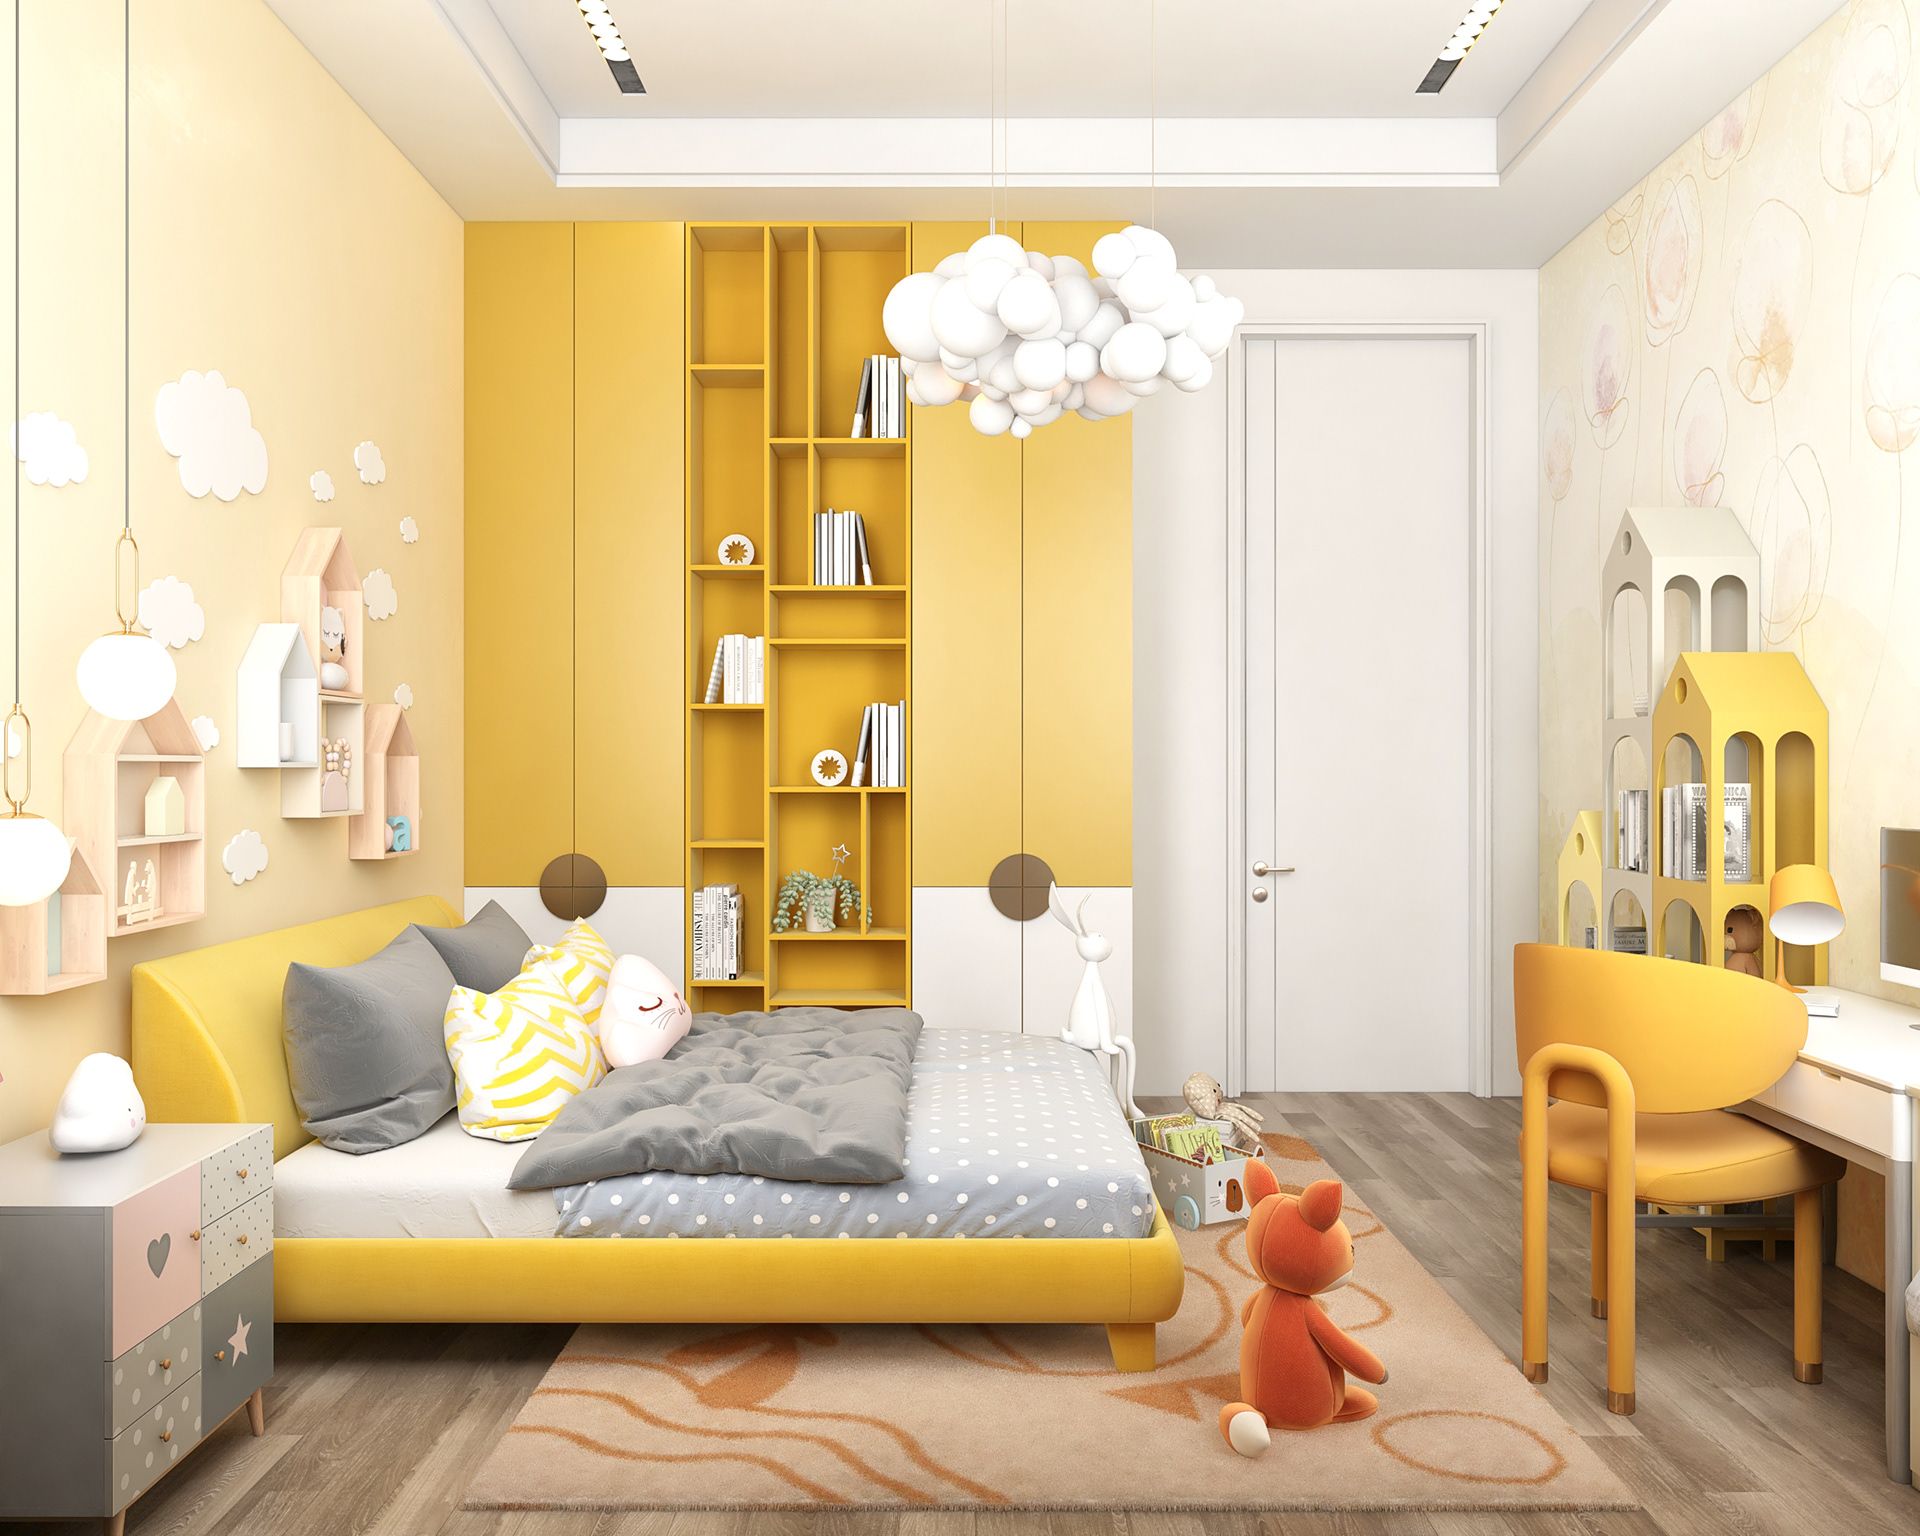 Sử dụng gam màu vàng tươi truyền thống cho phòng ngủ là lựa chọn phổ biến hiện nay